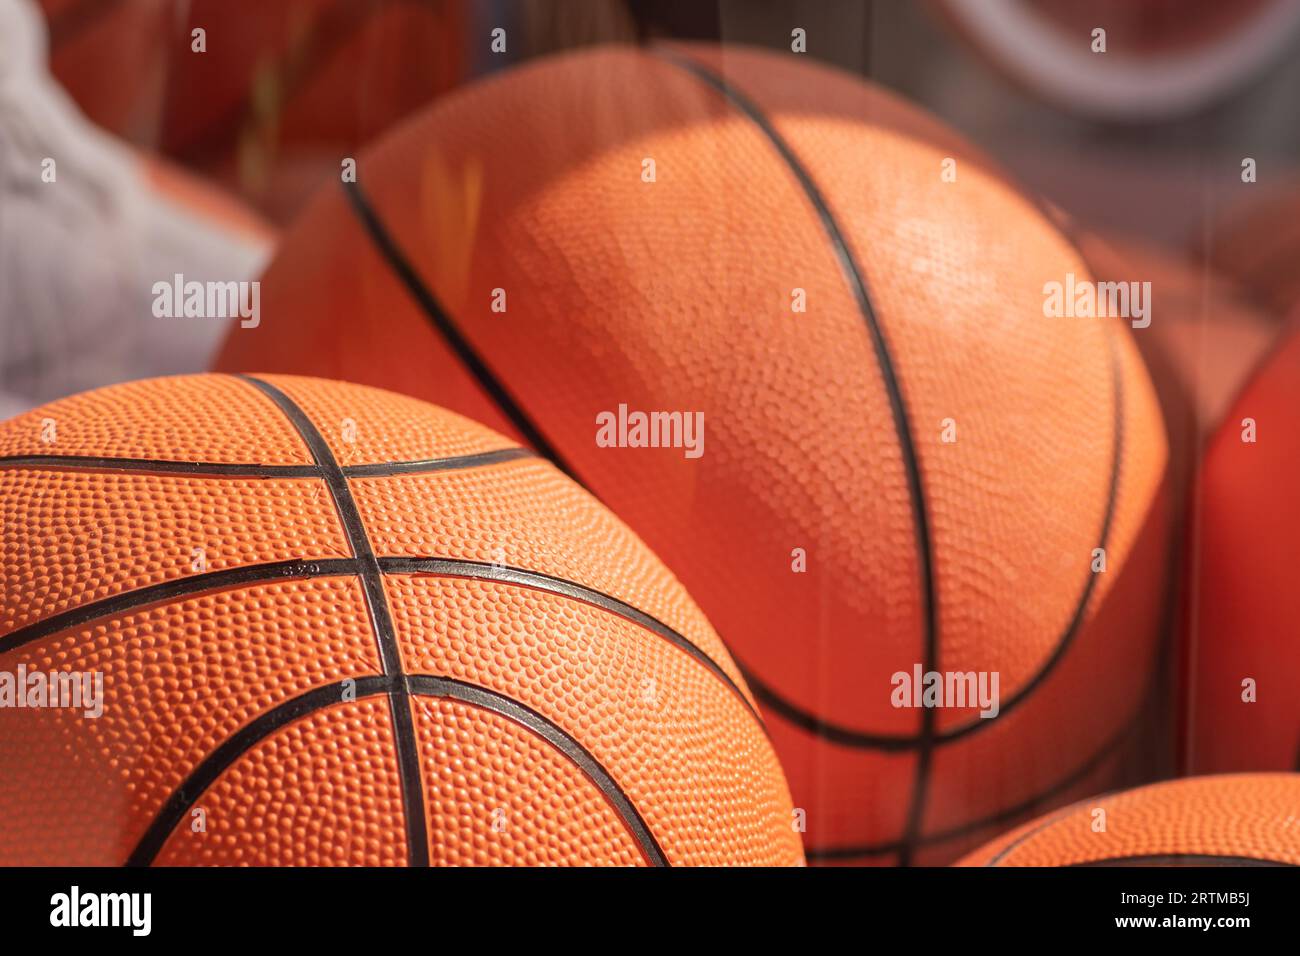 Beaucoup de balles de basket-ball orange dans une boîte en verre sous le soleil, en gros plan Banque D'Images